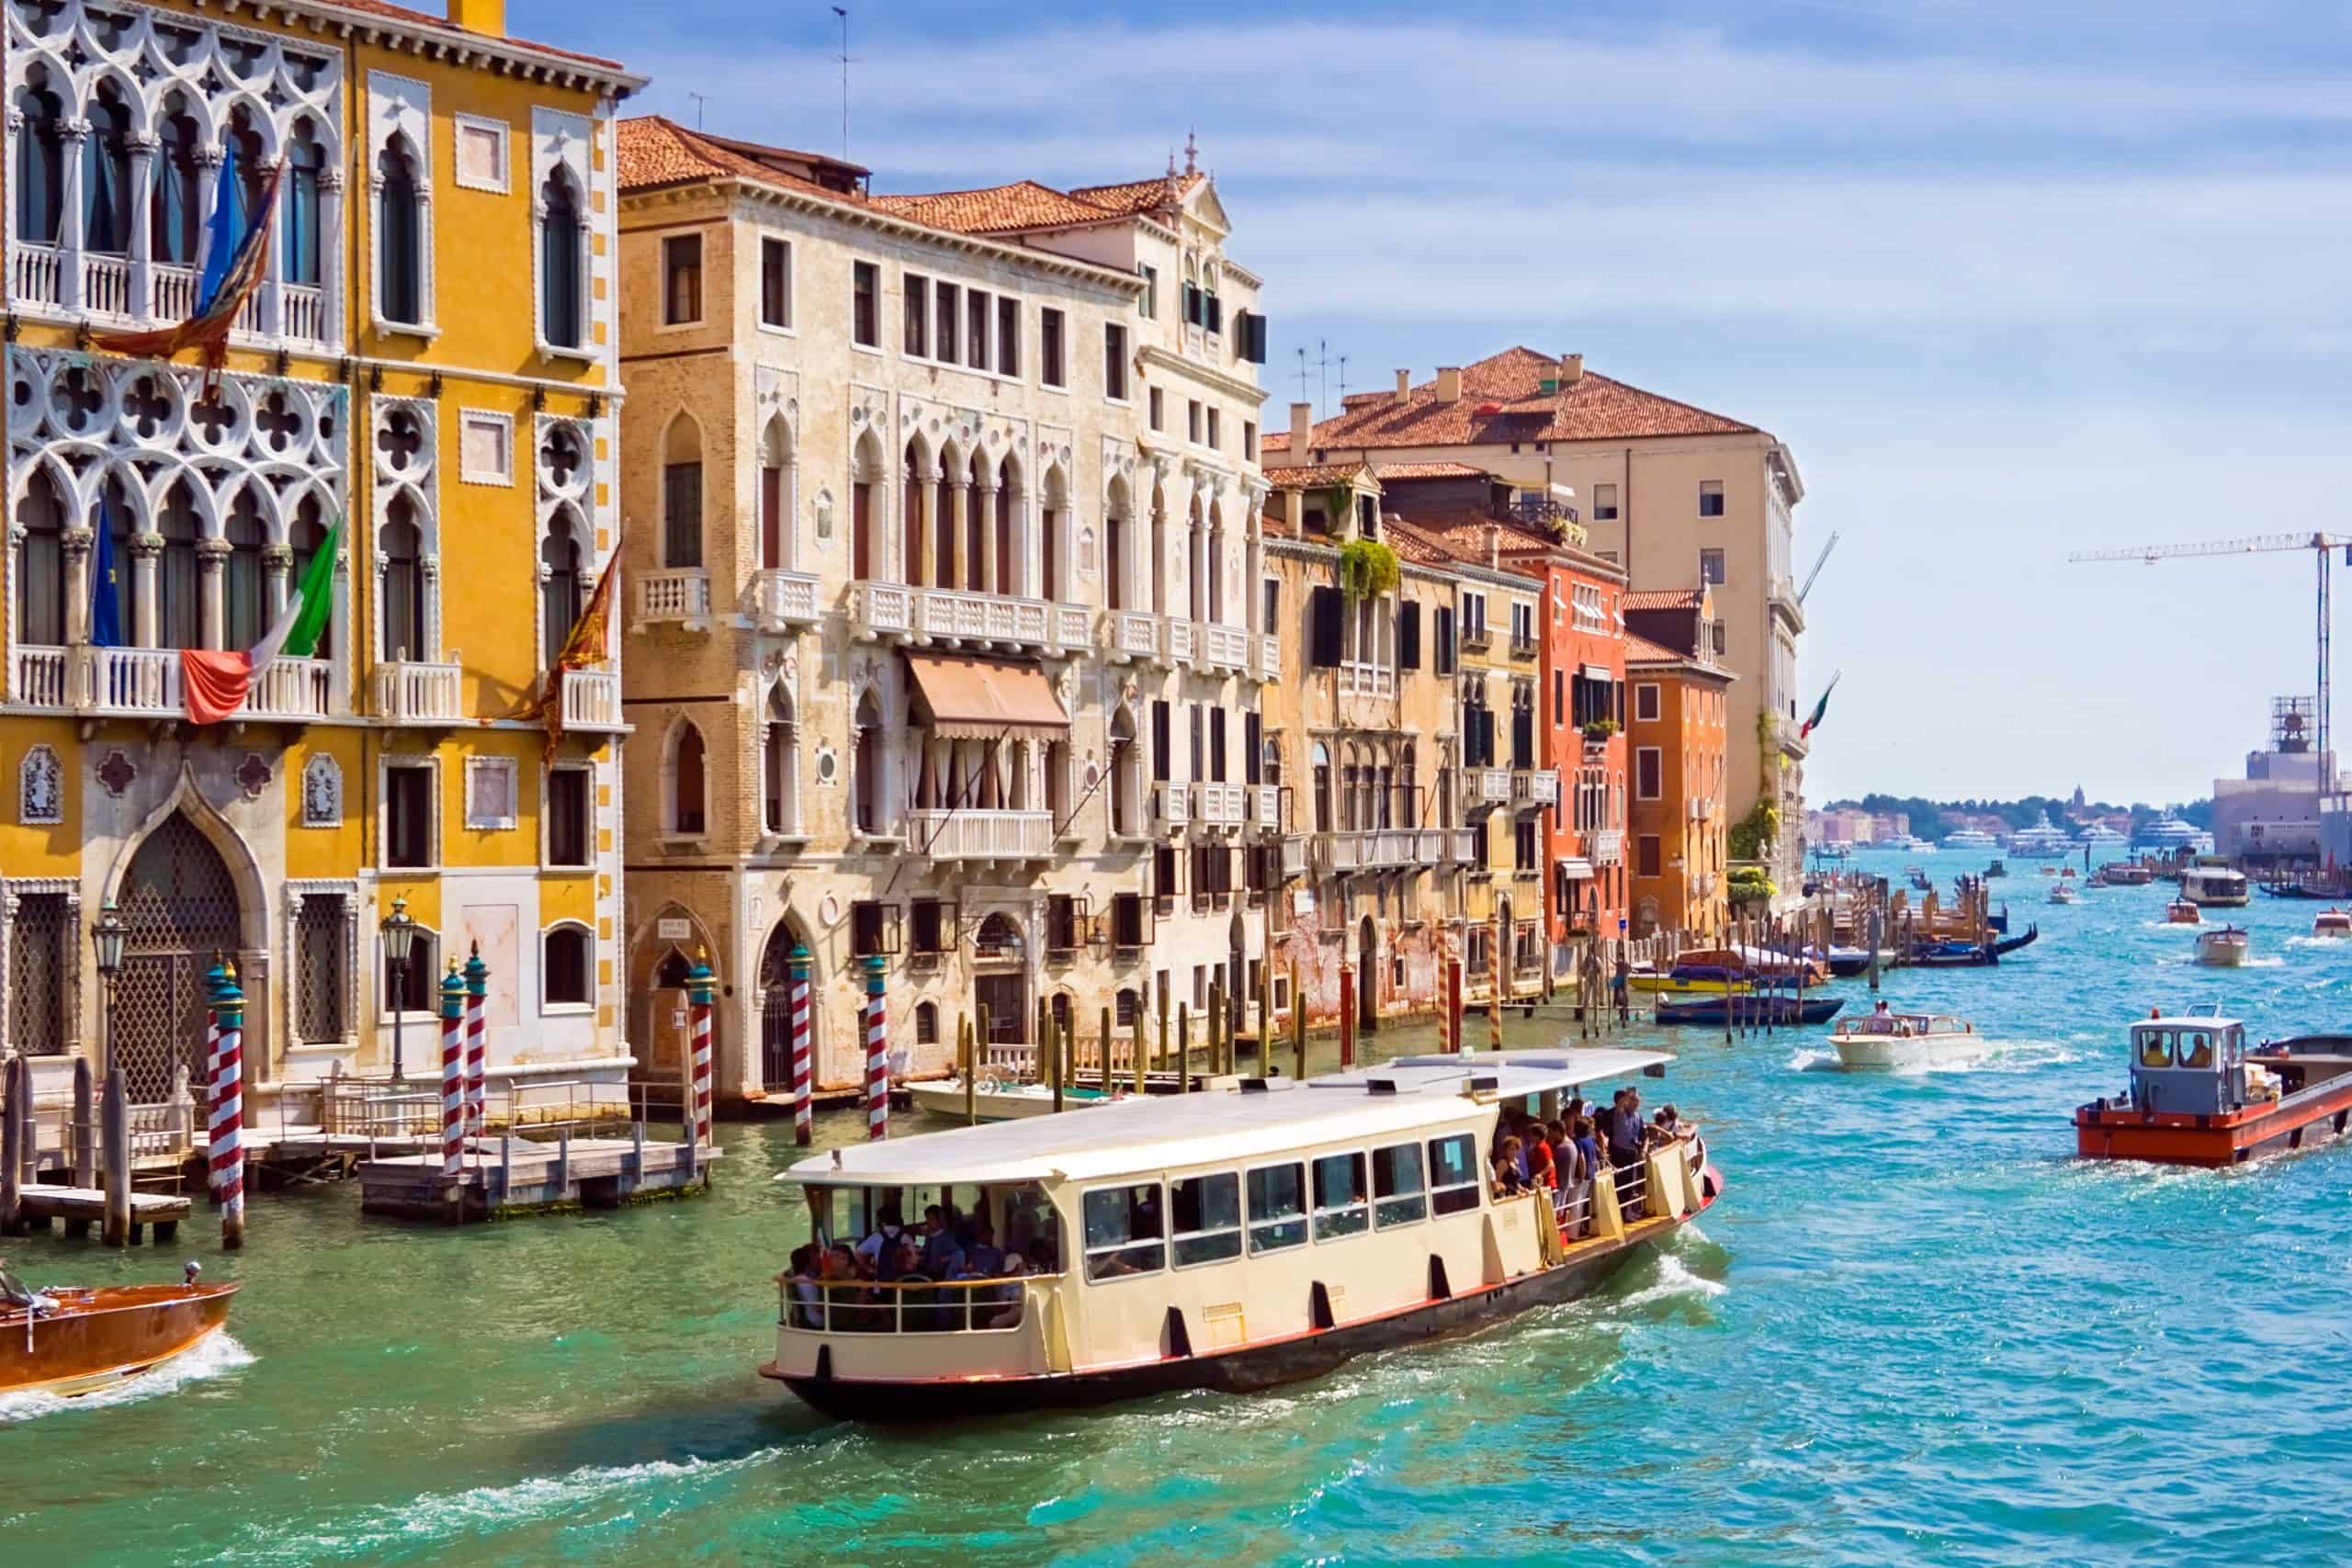 Vaporetto - How to Get to Venice